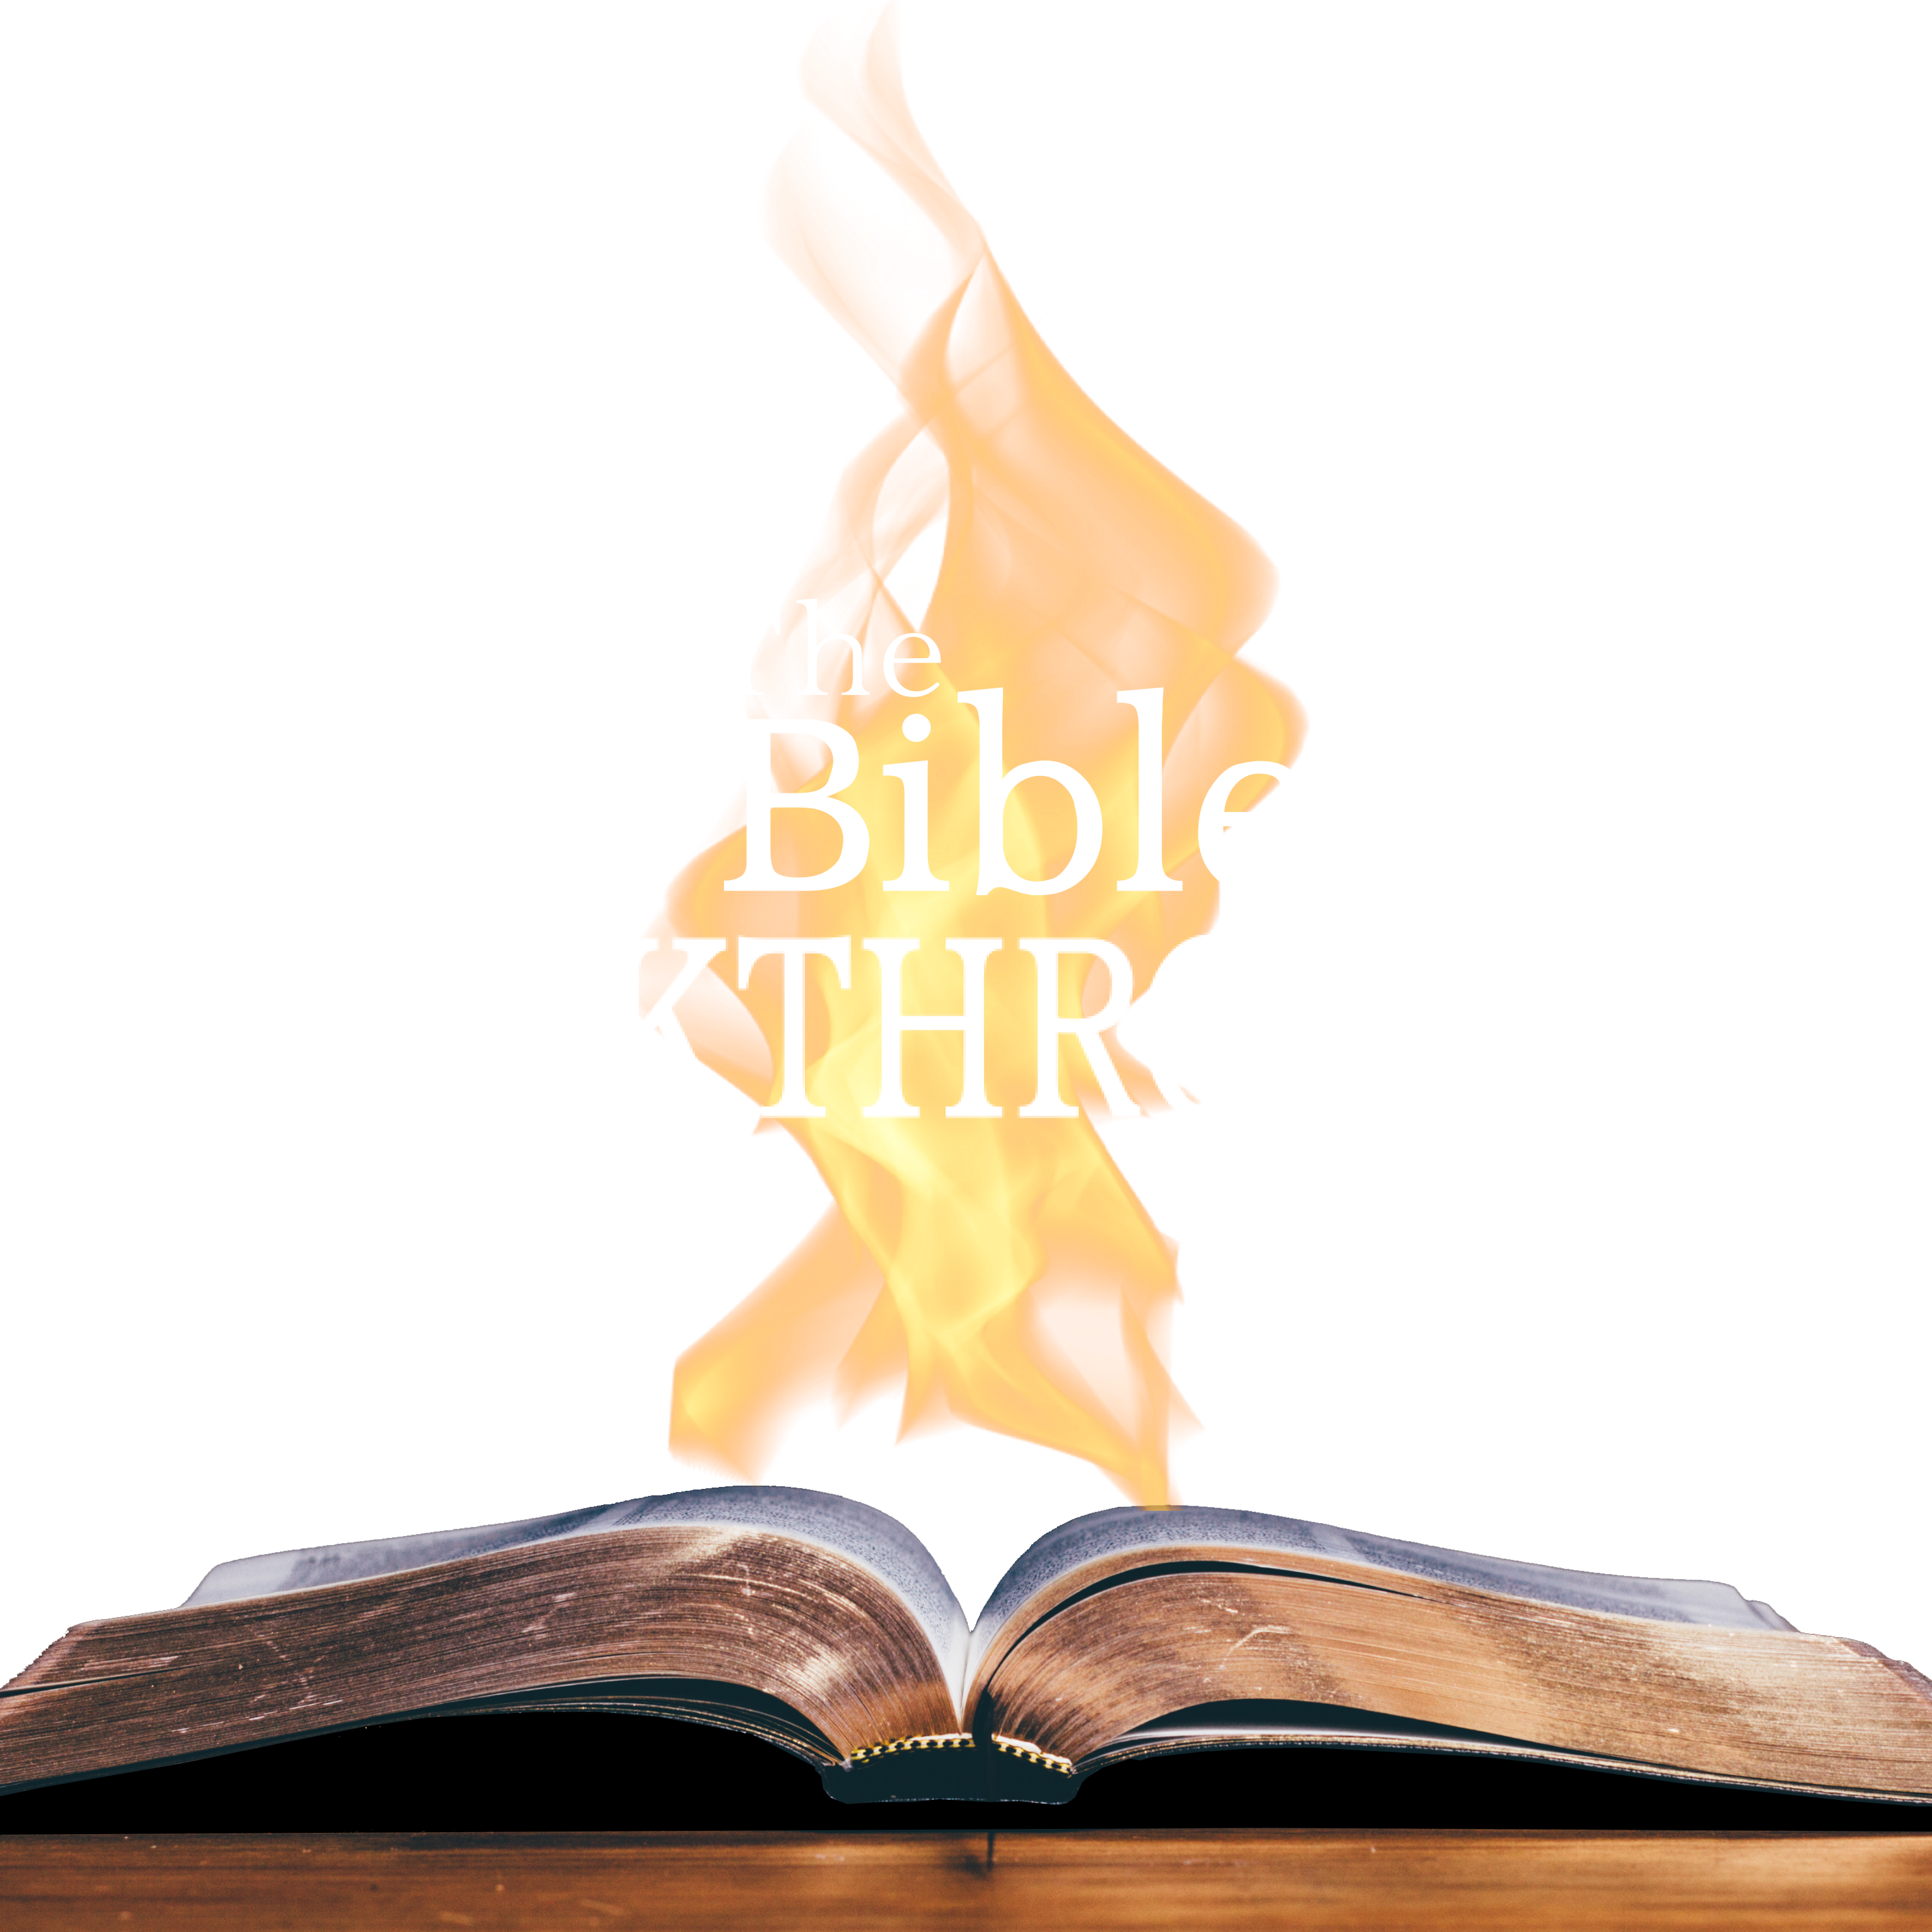 The Bible Breakthrough